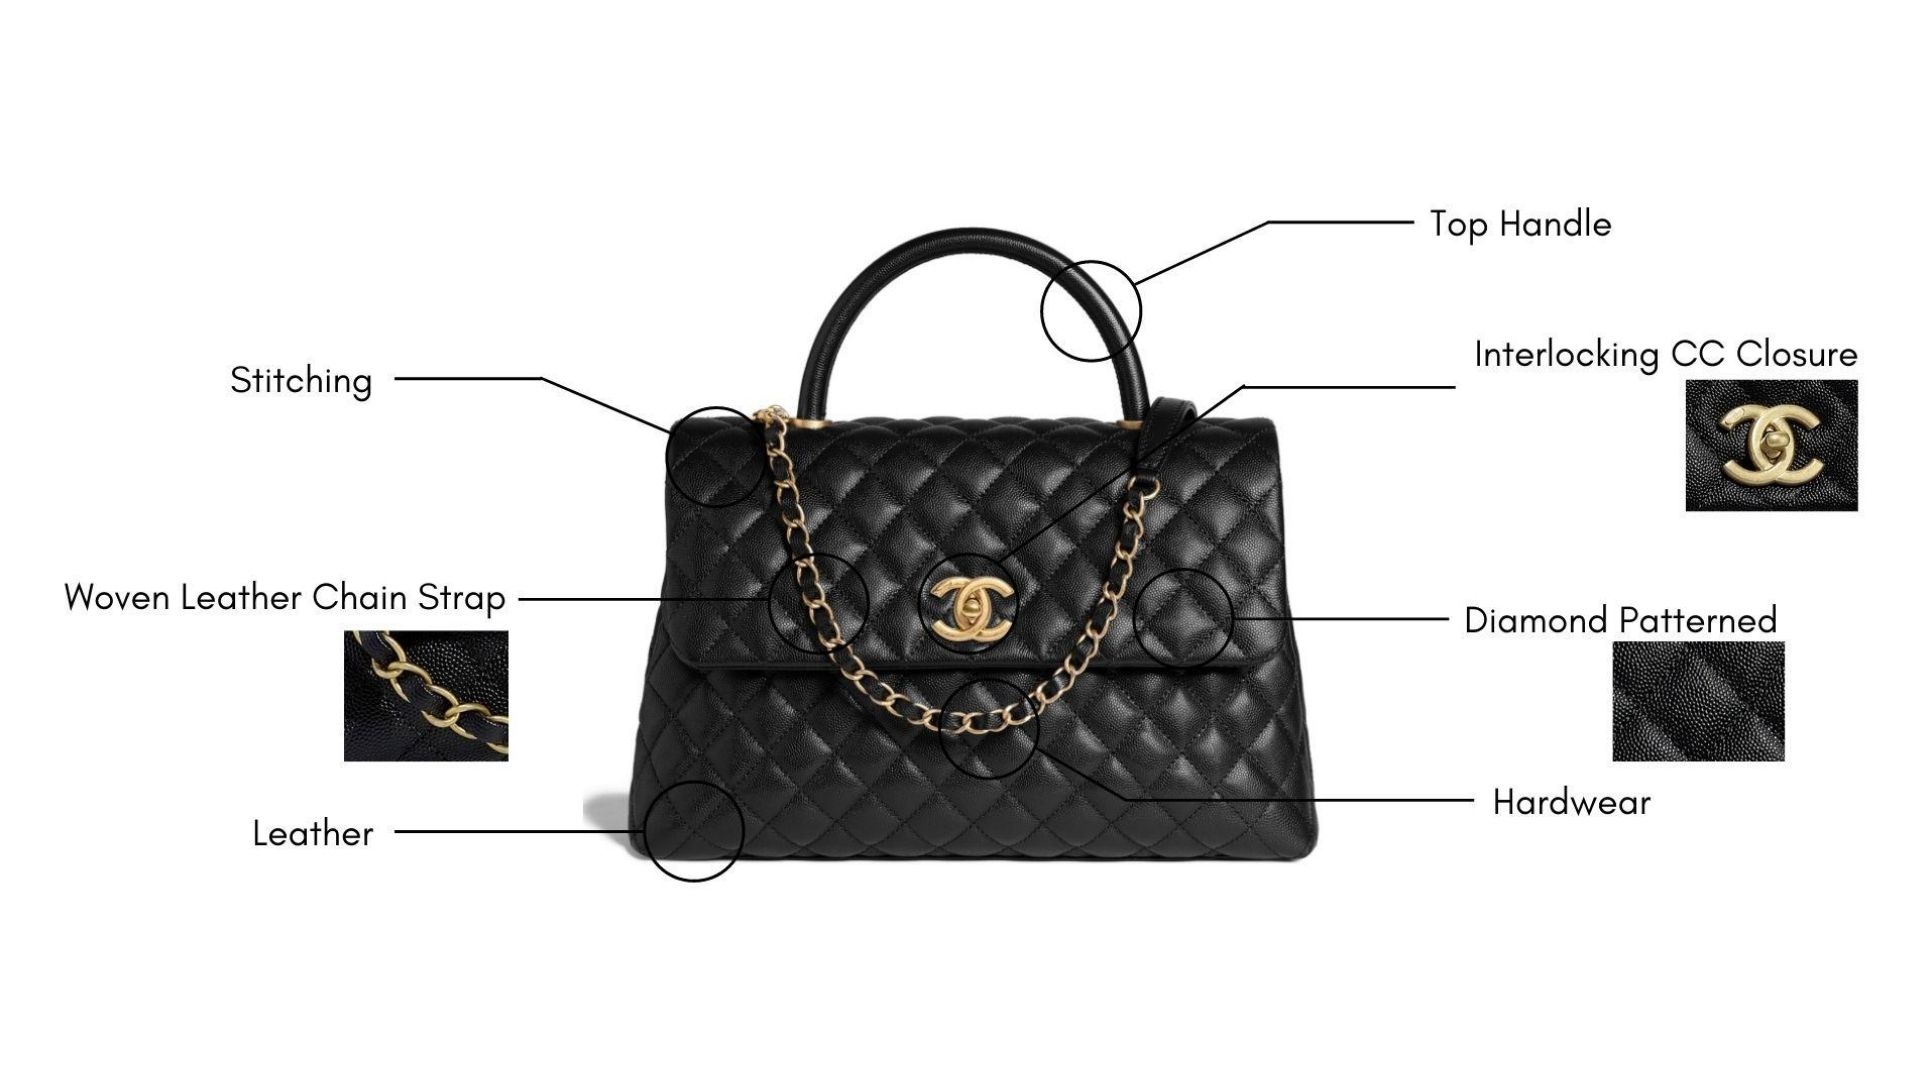 Chanel Coco Top Handle Bag